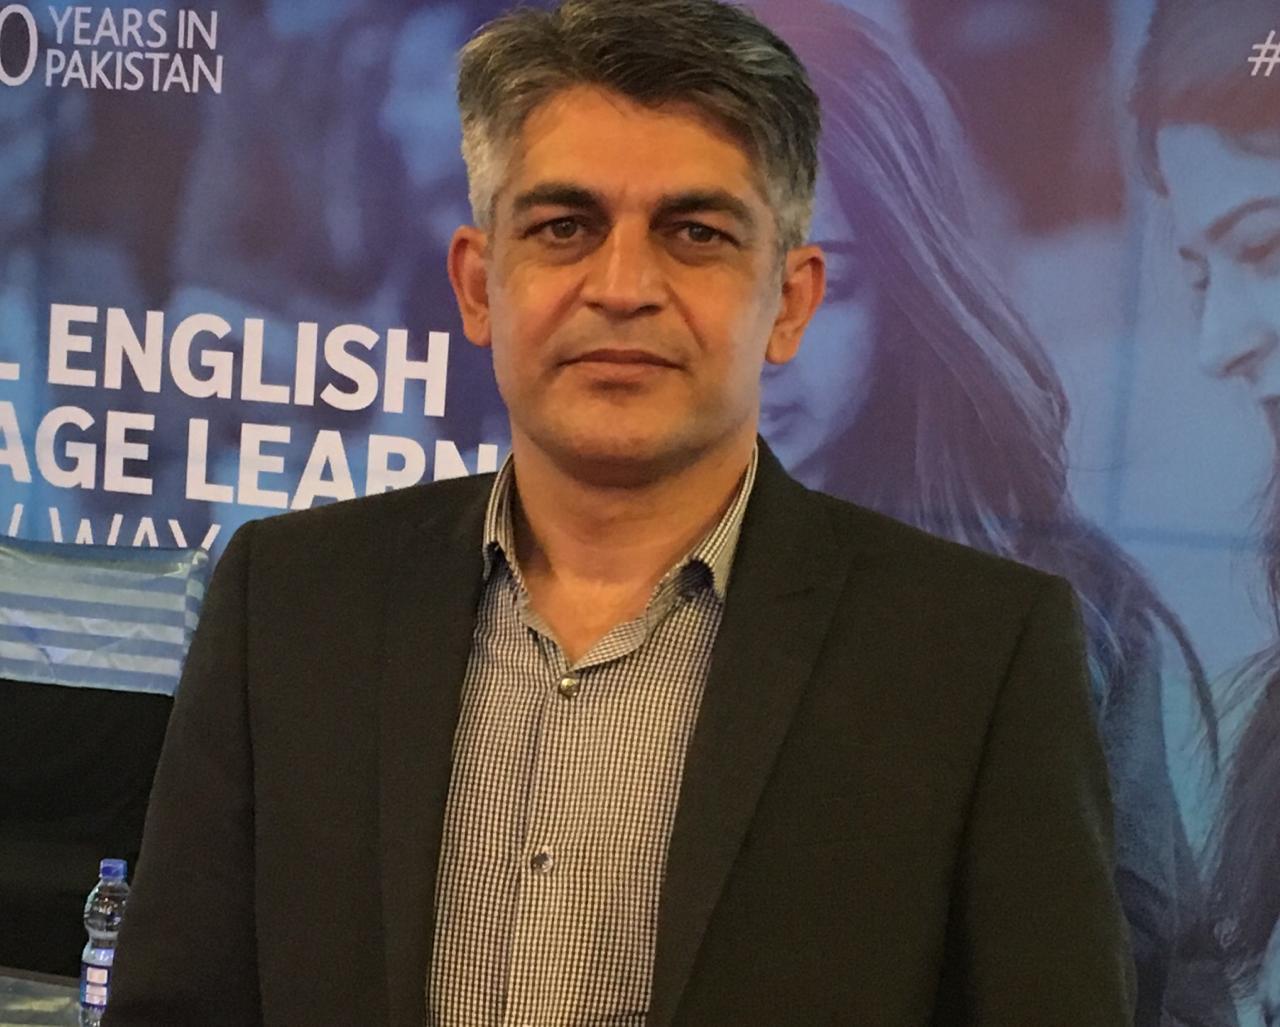 Dr Aziz Ullah Khan